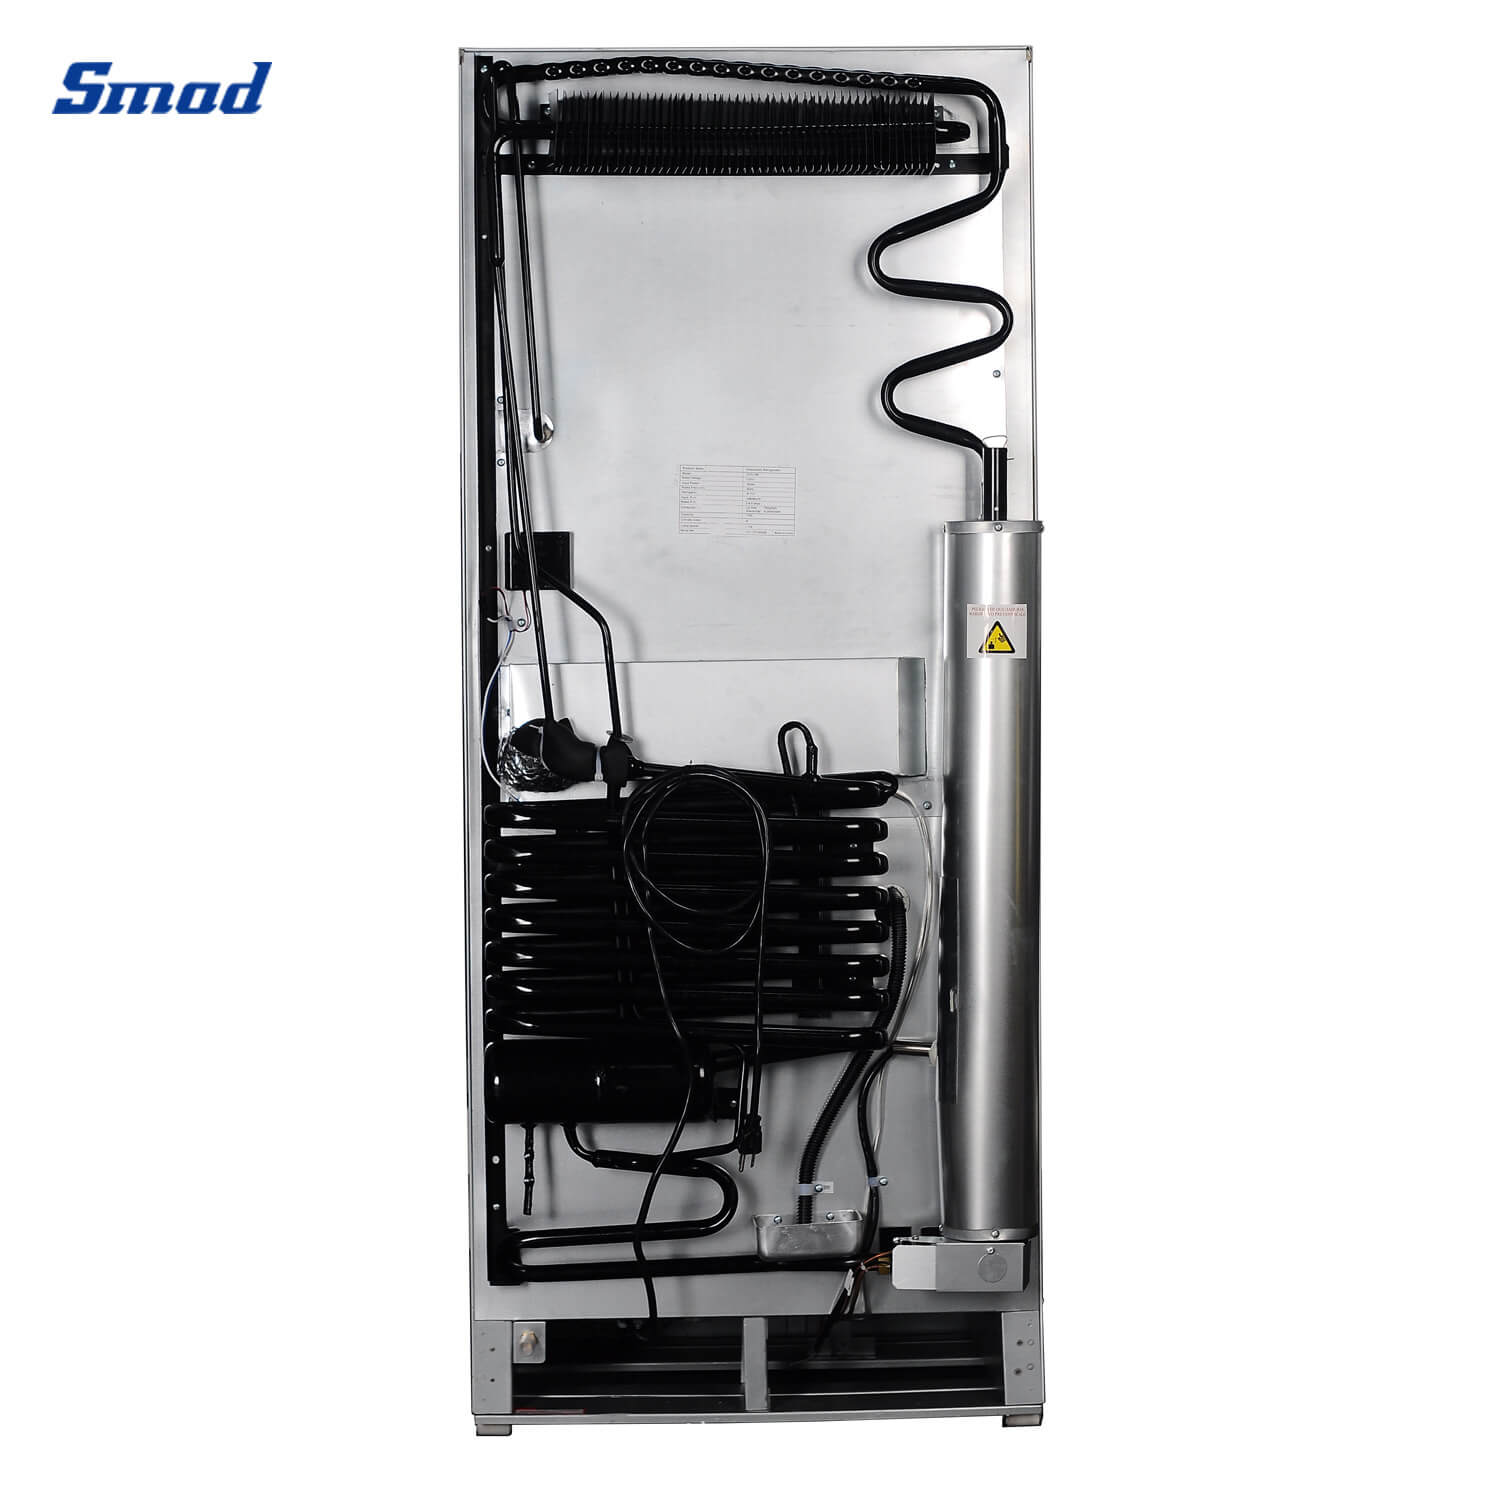 
Smad Gas Top Freezer Double Door Fridge Freezer with 2-way power supply